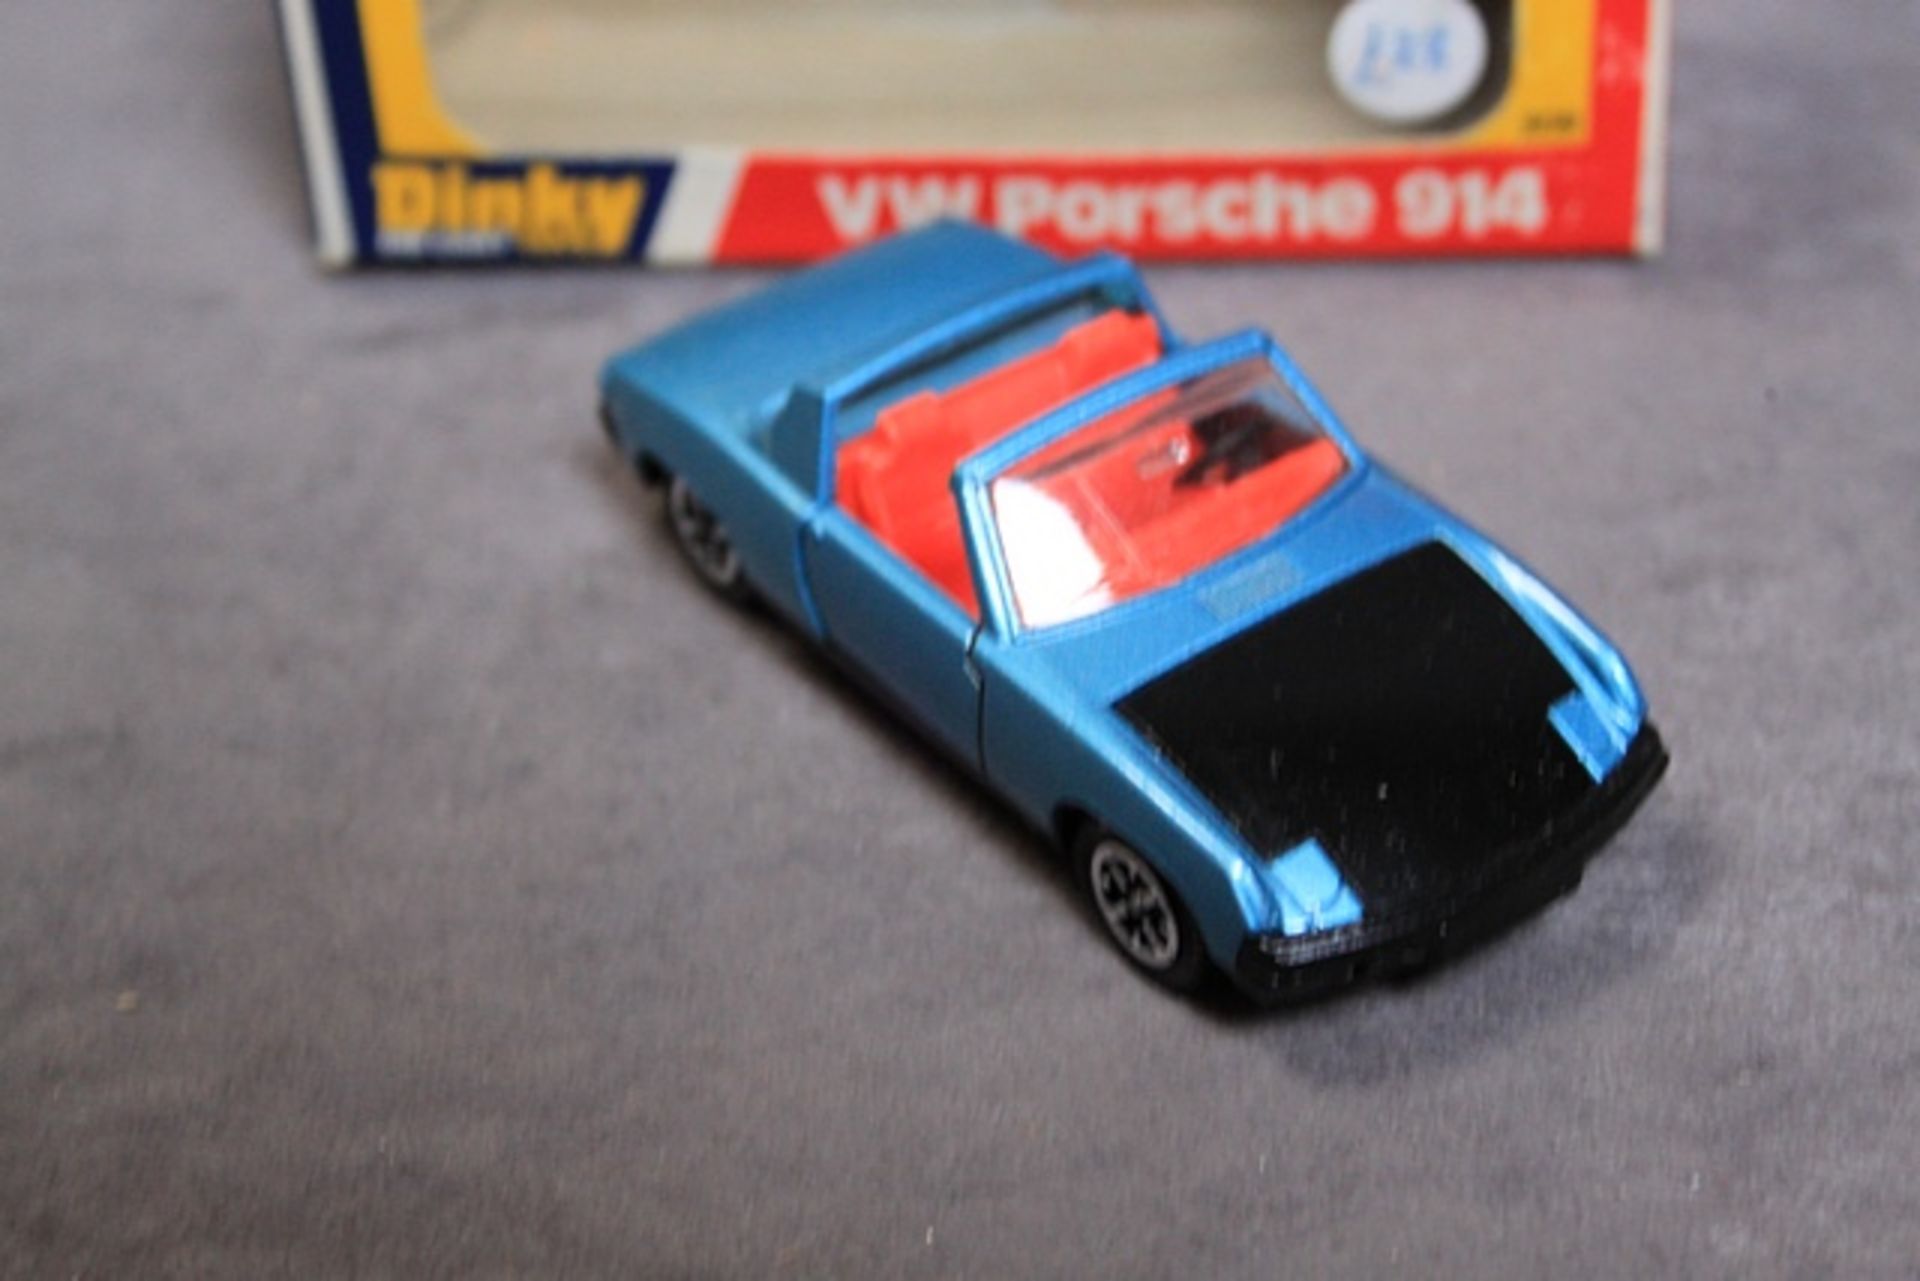 Mint Dinky Diecast #208 VW Porsche 914 Metallic Blue With Black Bonnet Red Interior Speed Wheels In